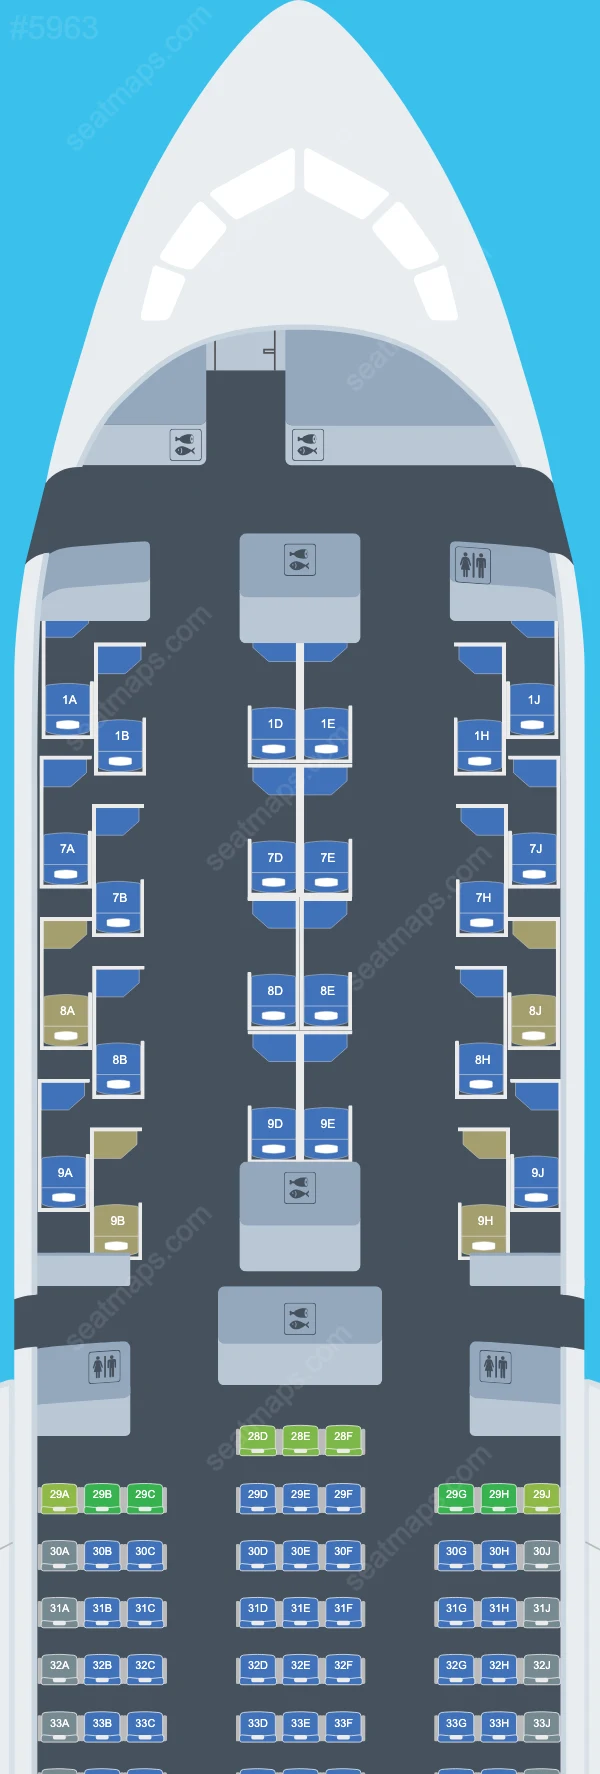 Korean Air Boeing 787 Seat Maps 787-9